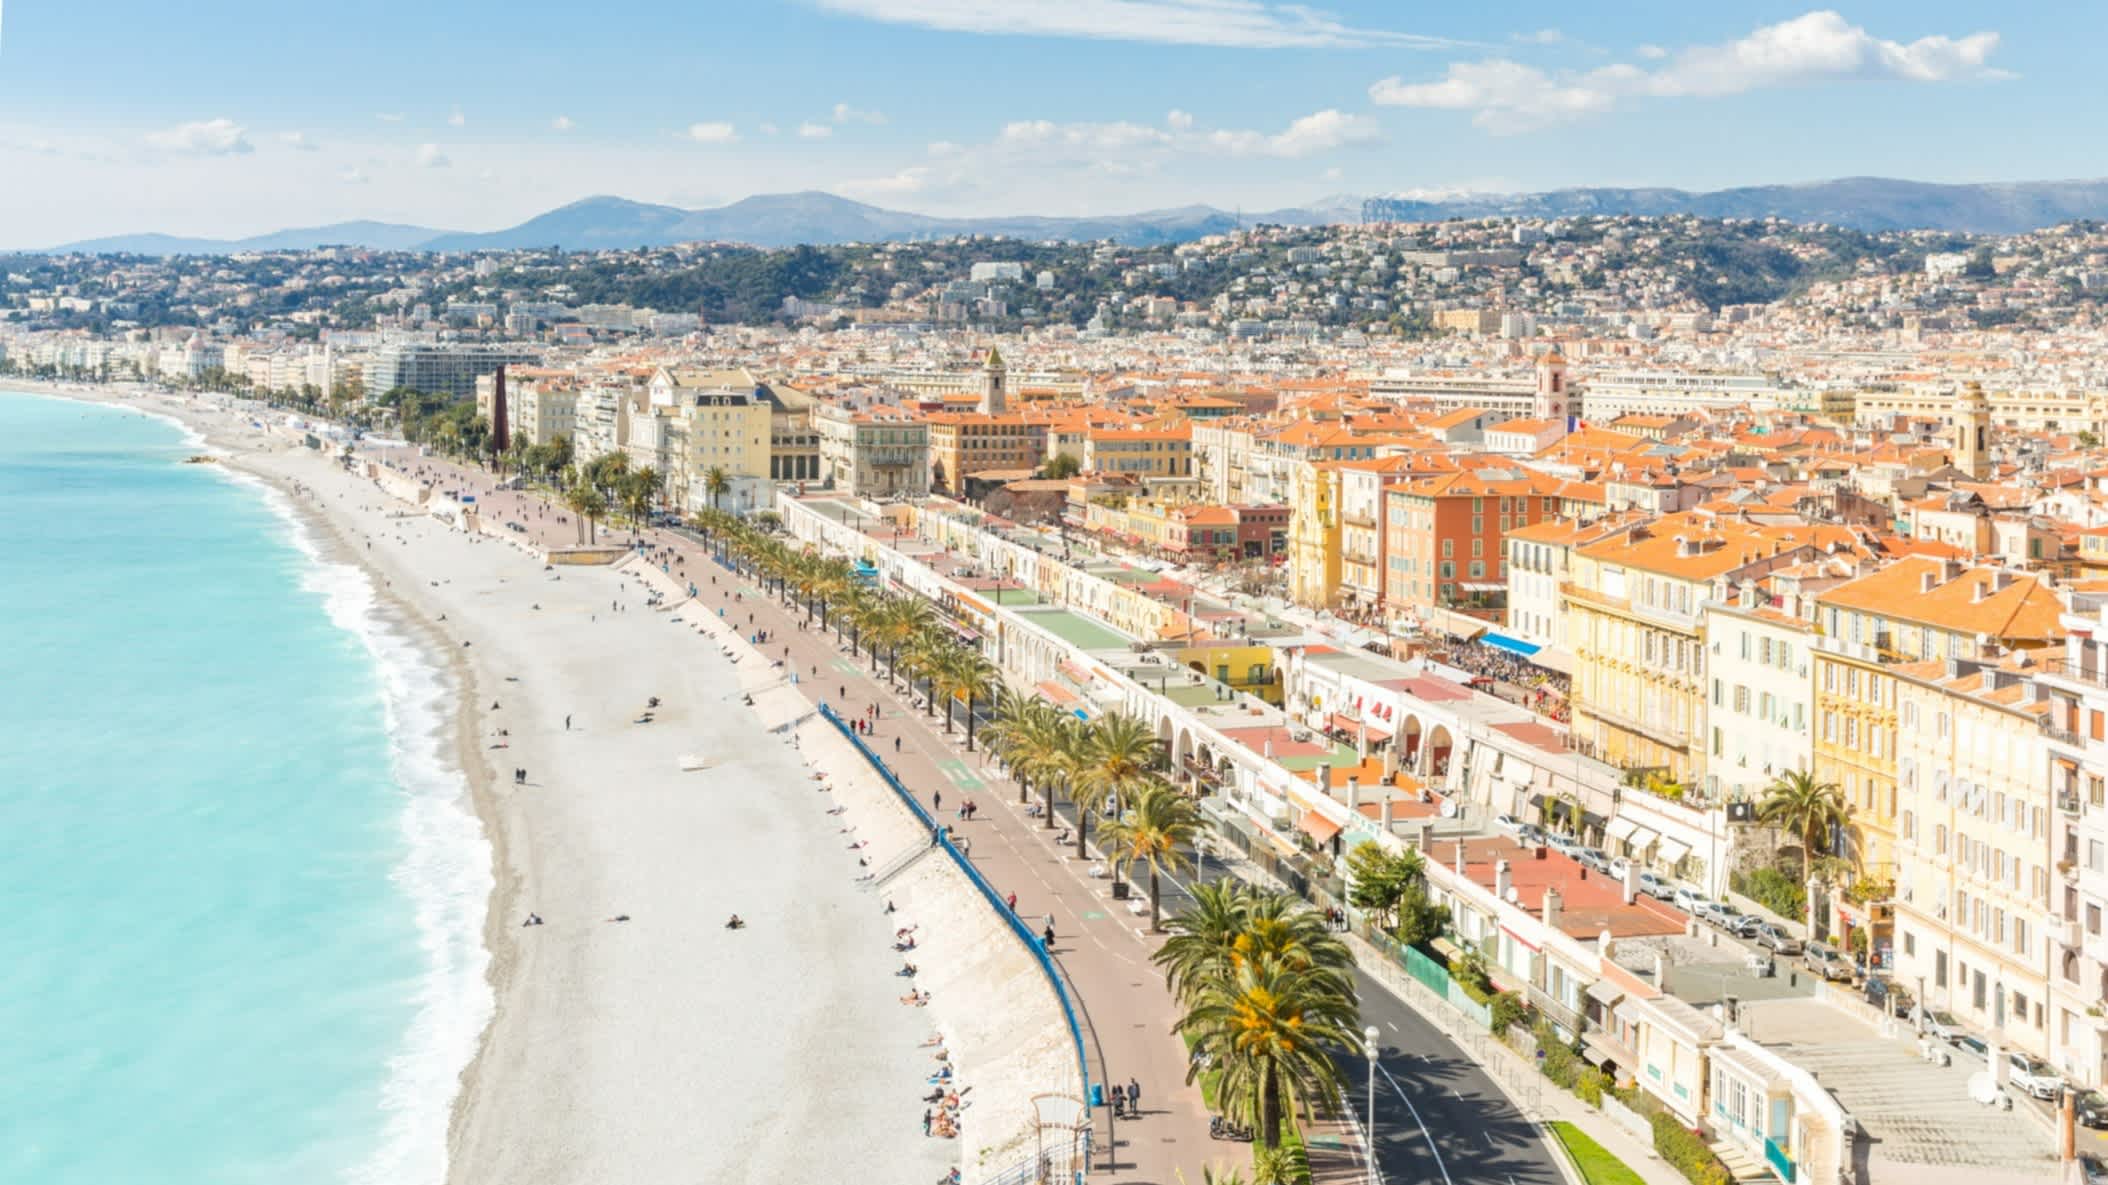 Mittelmeerstrand in Nizza, Cote d'Azur, Frankreich

